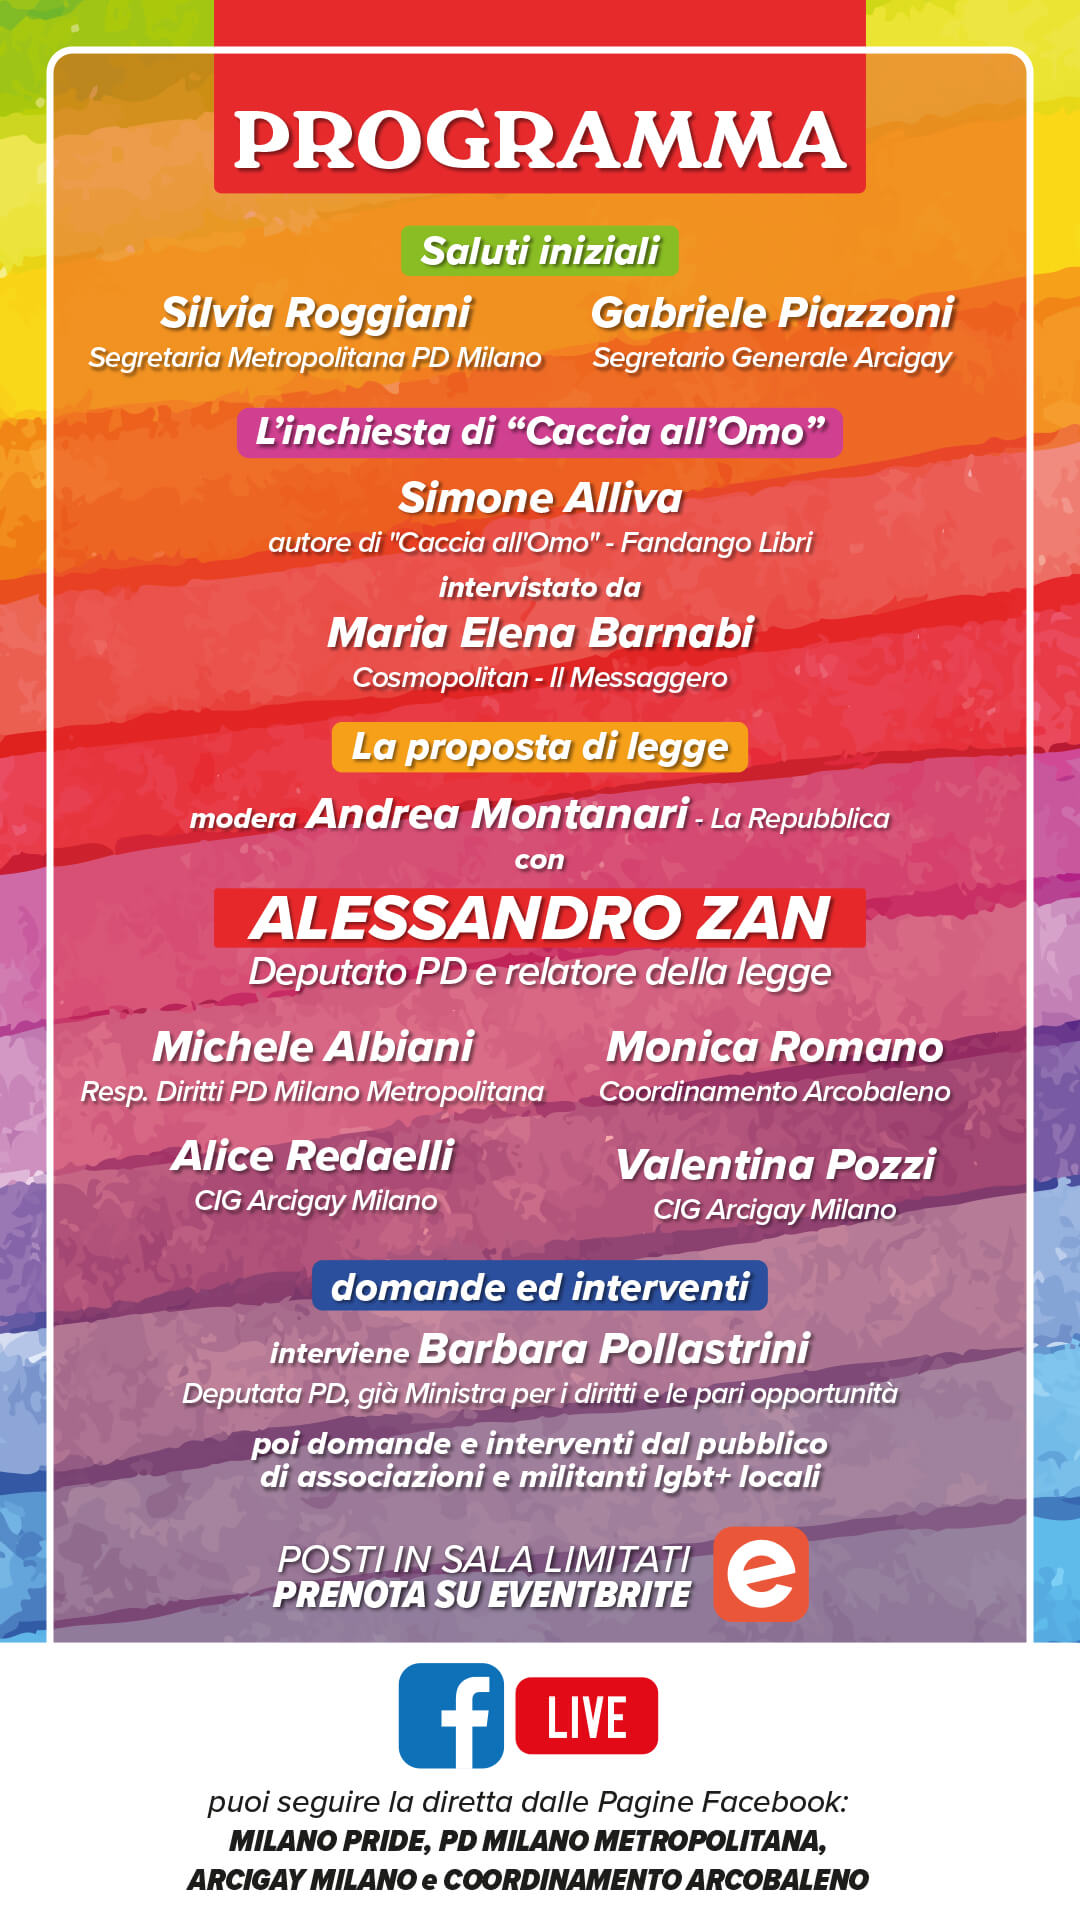 PD Milano, incontro a teatro e in streaming per dire sì alla legge contro l'omotransfobia e la misoginia - programma Milano incontra Alessandro Zan1 - Gay.it